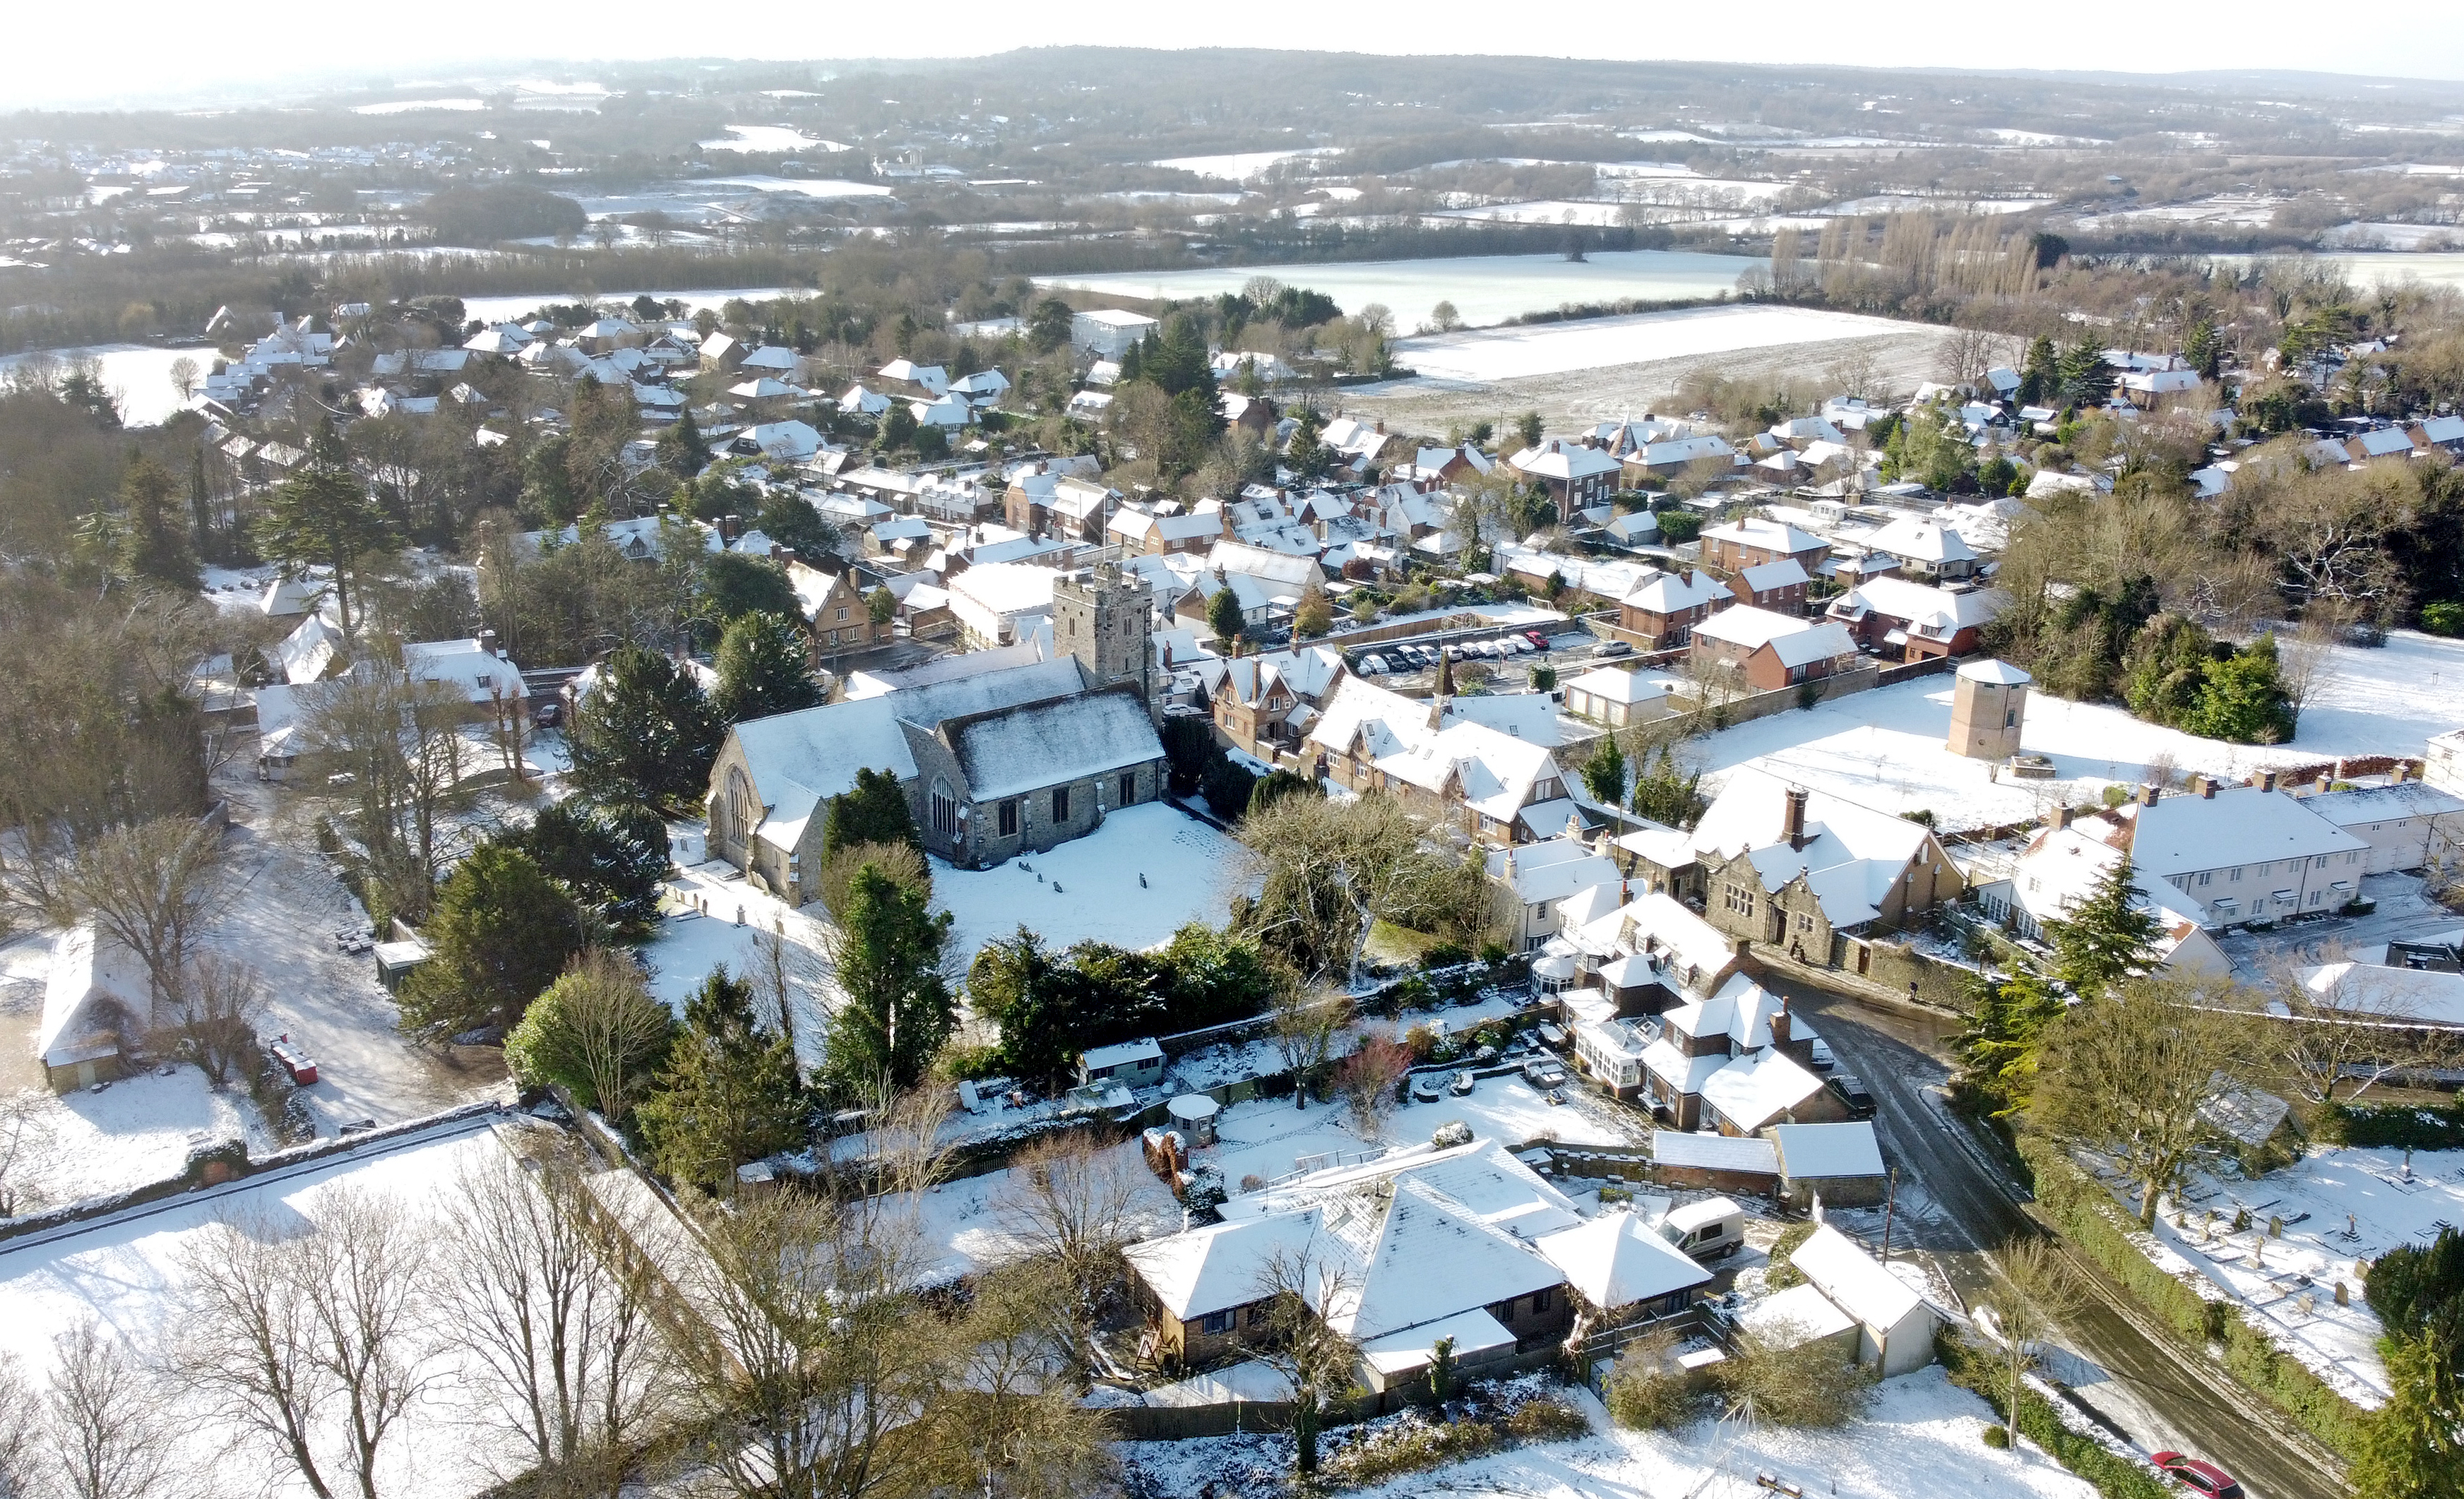 Am Dienstag lagen in Wrotham, Kent, immer noch Schnee und Eis